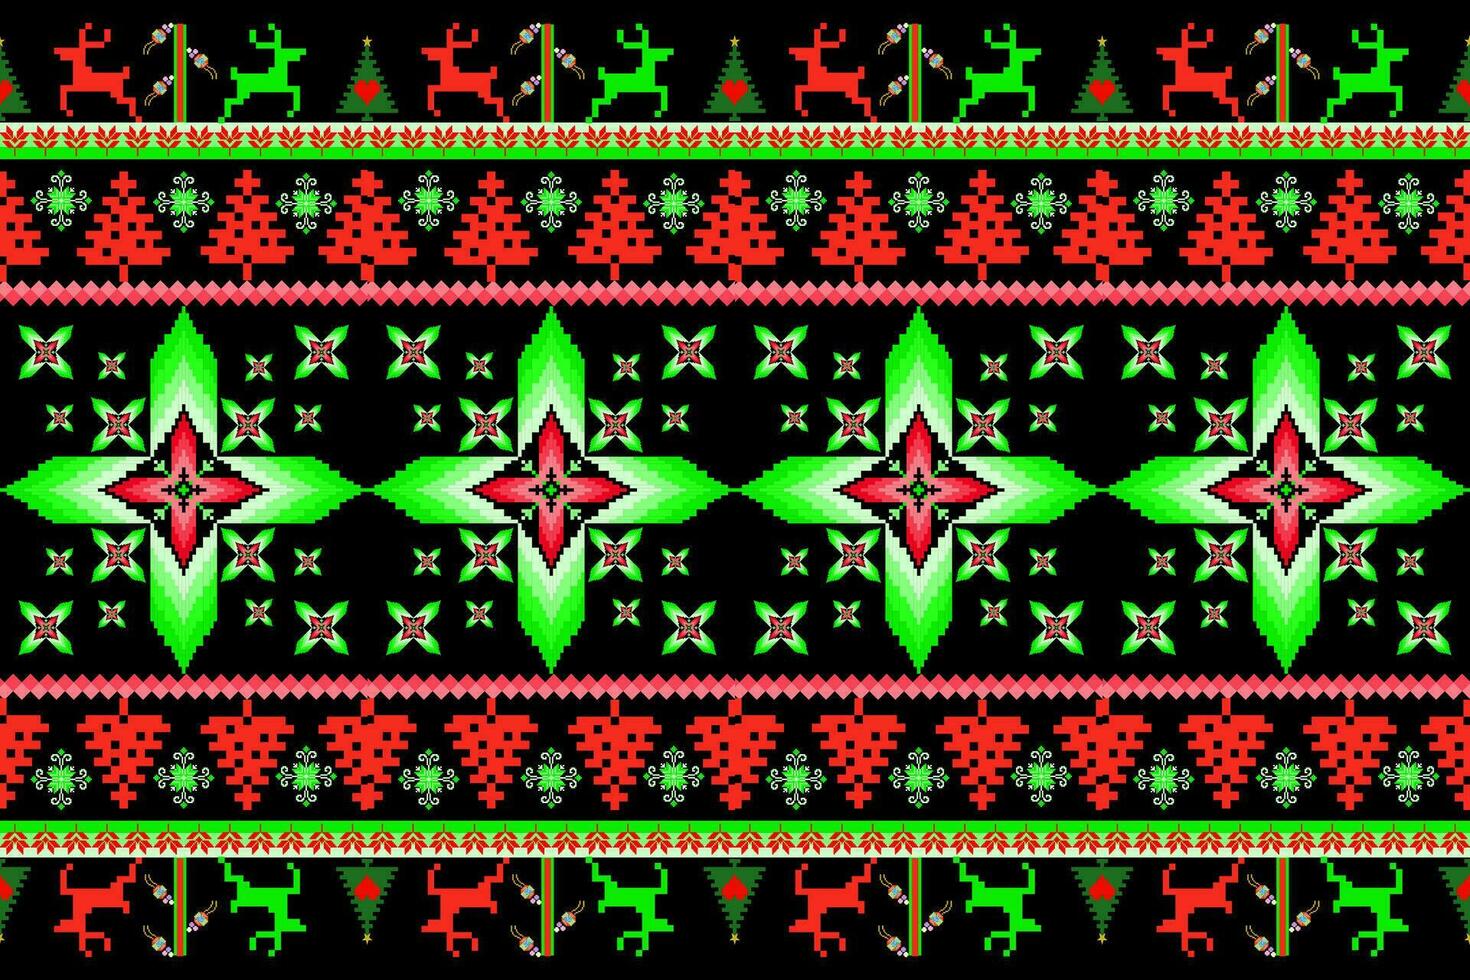 floral cruzar puntada bordado en blanco fondo.geometrico étnico oriental sin costura modelo tradicional.azteca estilo resumen vector ilustración.diseño para textura,tela,ropa,envoltura,pareo.